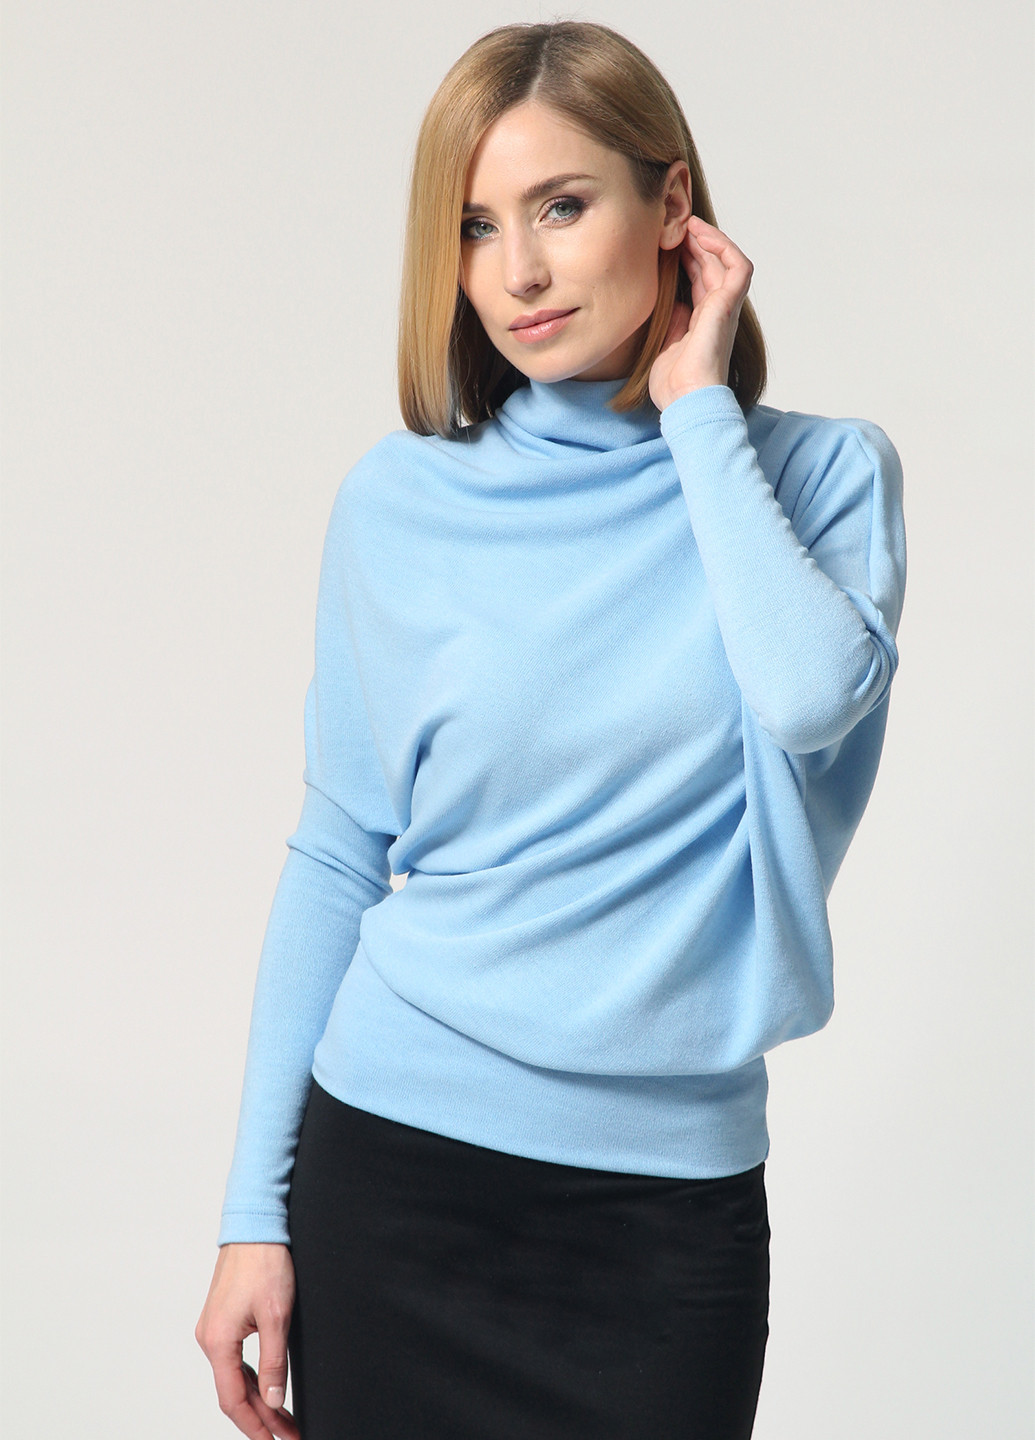 Голубой демисезонный свитер джемпер Lada Lucci